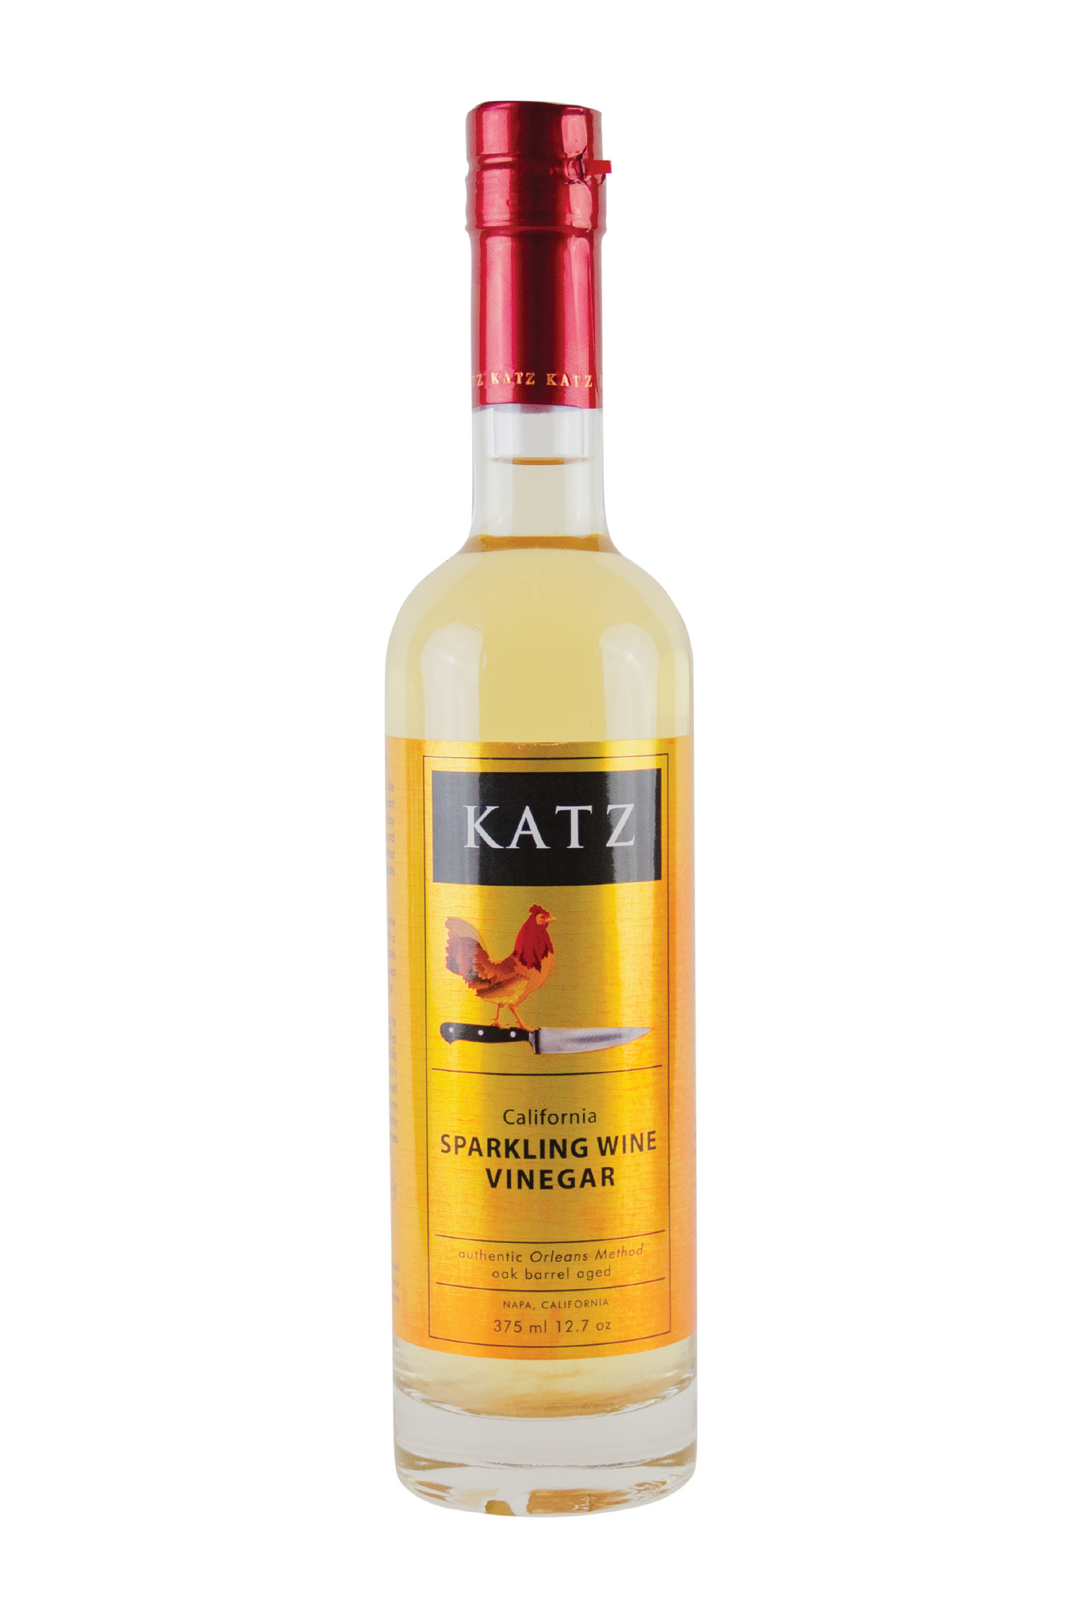 KATZ Sparkling Wine Vinegar